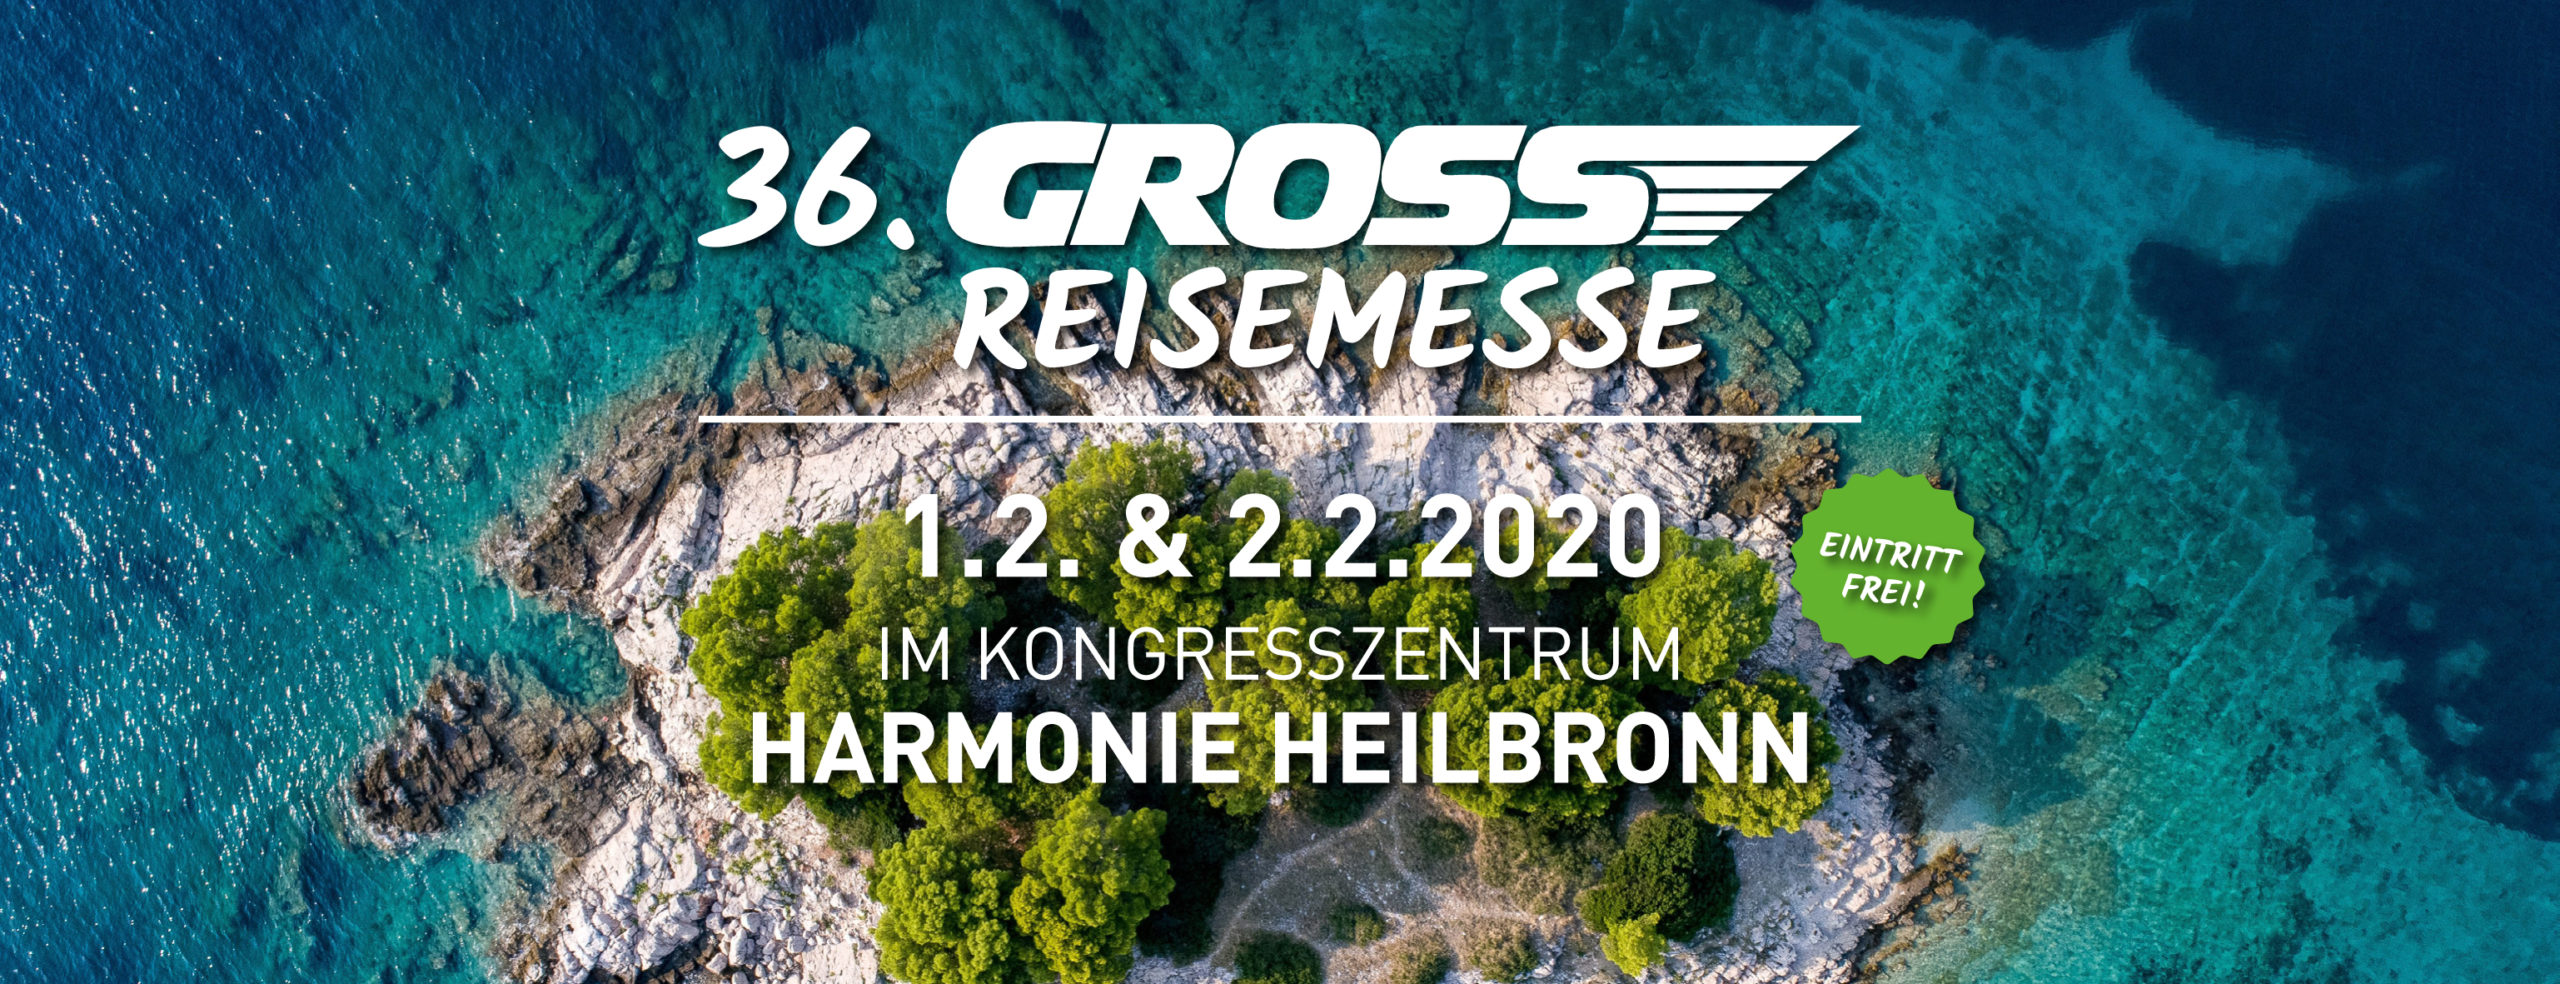 Reisemesse-Banner 2020